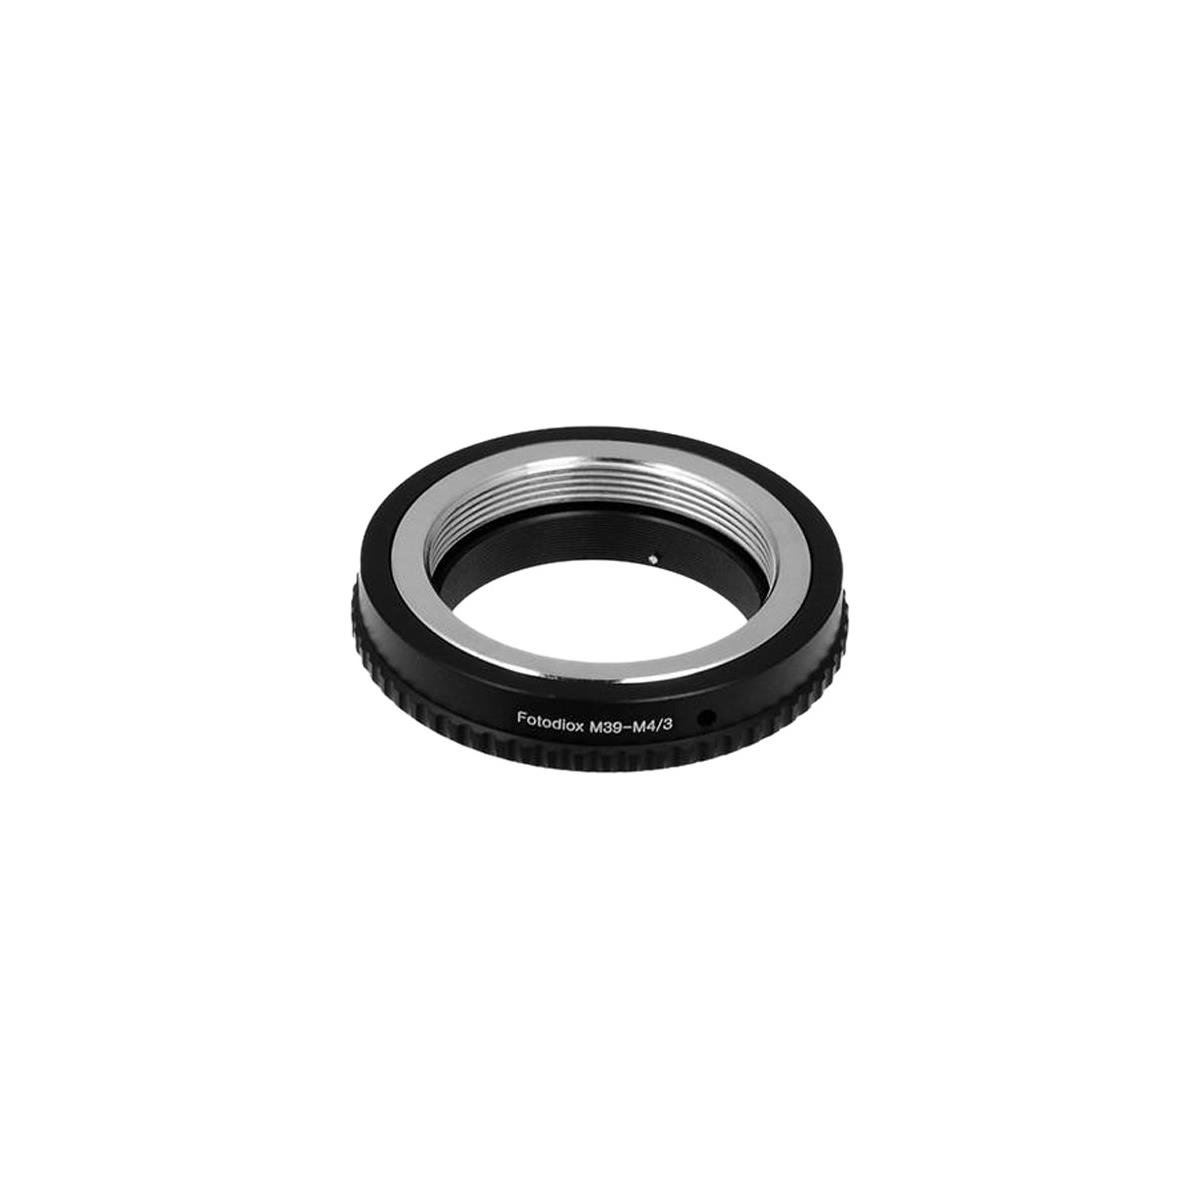 Image of Fotodiox Lens Mount Adapter for M39/L39 Screw Mount SLR Lens to MFT Camera